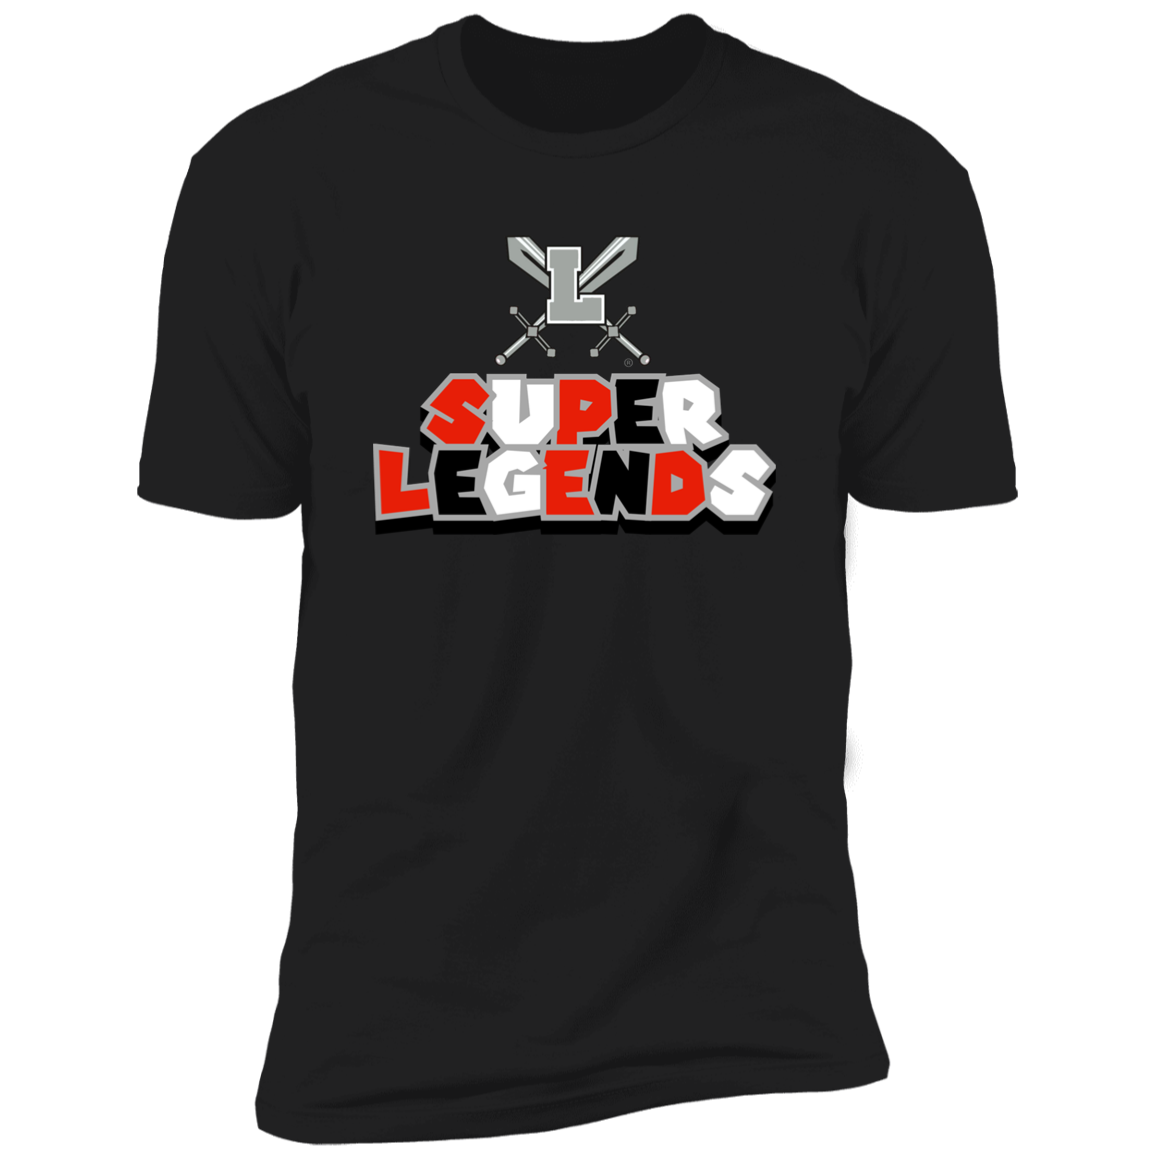 Super Legends Short Sleeve T-Shirt